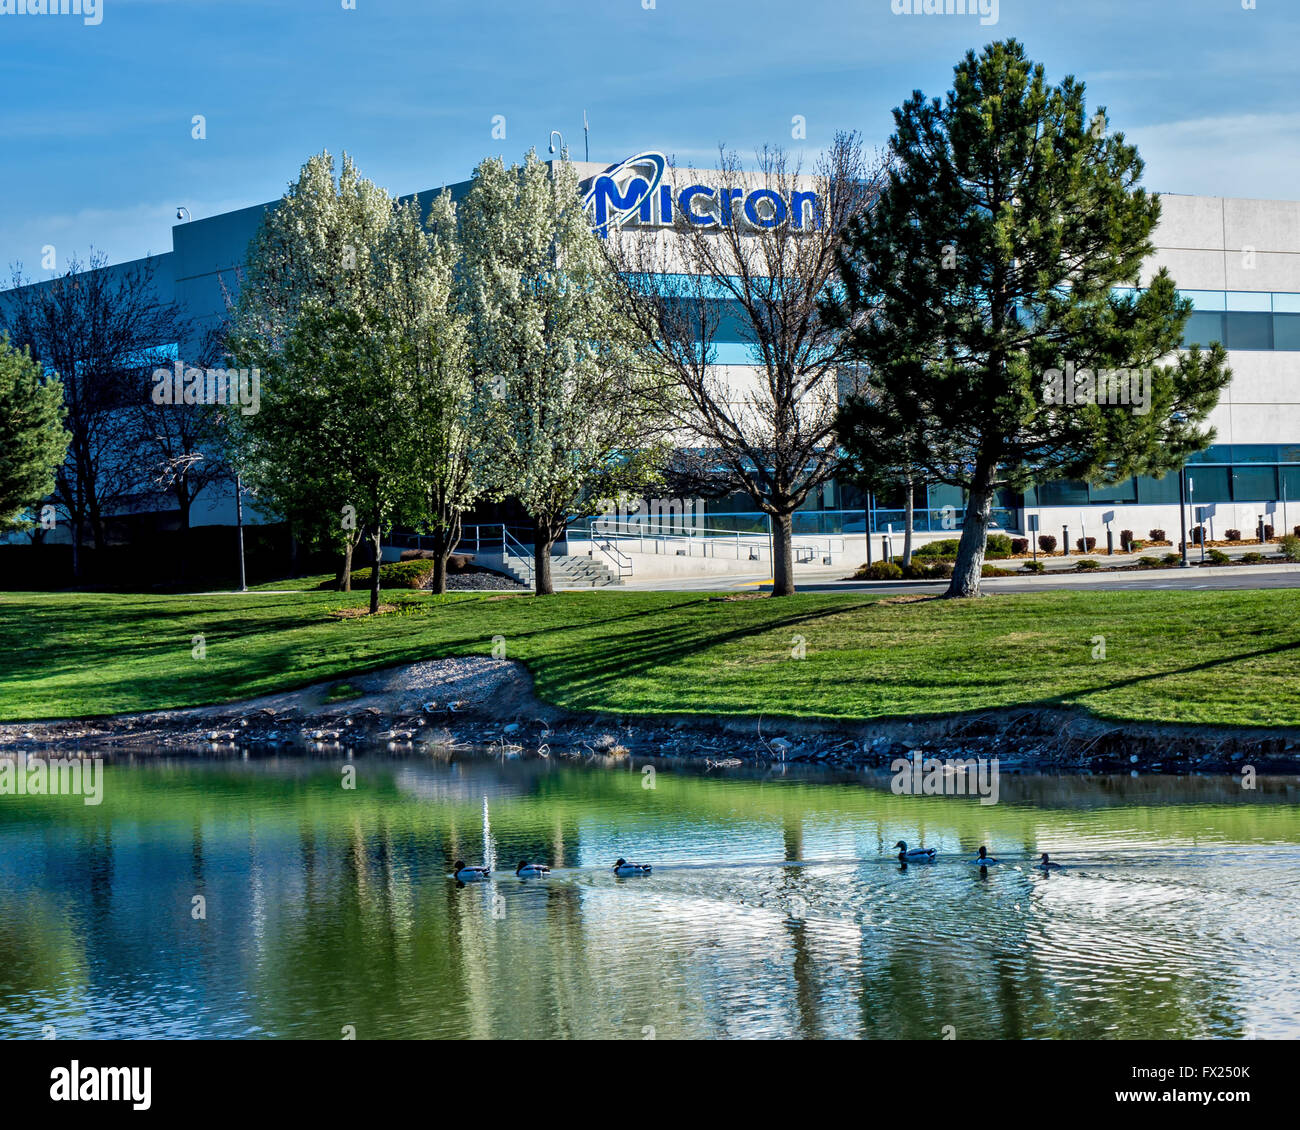 Boise, ID, USA - 25. März 2016: Micron Technology Boise. Micron ist ein führendes Unternehmen in der Halbleiterfertigung. Stockfoto